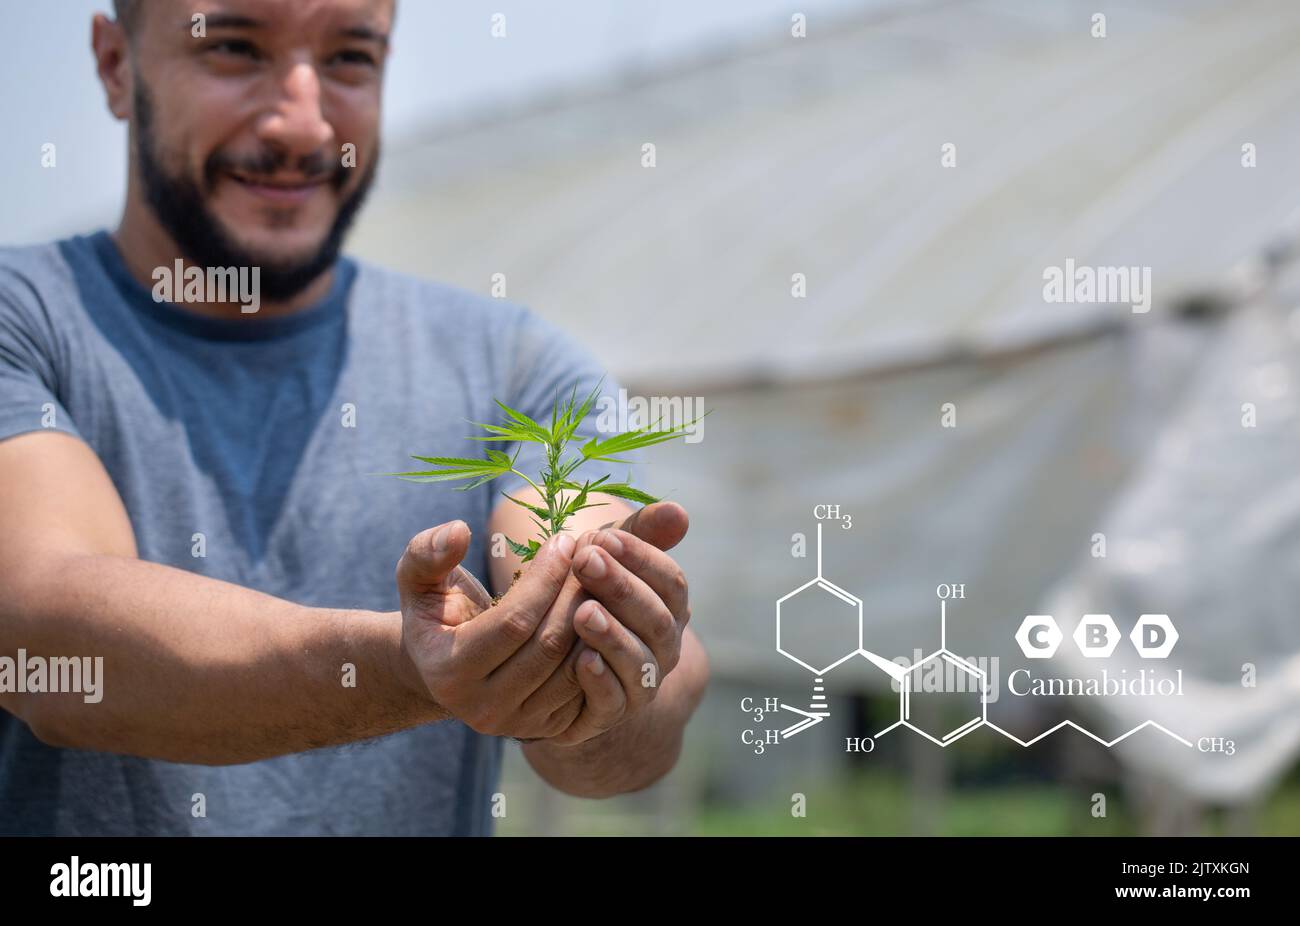 Farmers hold cannabis plants, grow cannabis, medicinal cannabis, cbd formula. CBD hemp oil. Stock Photo